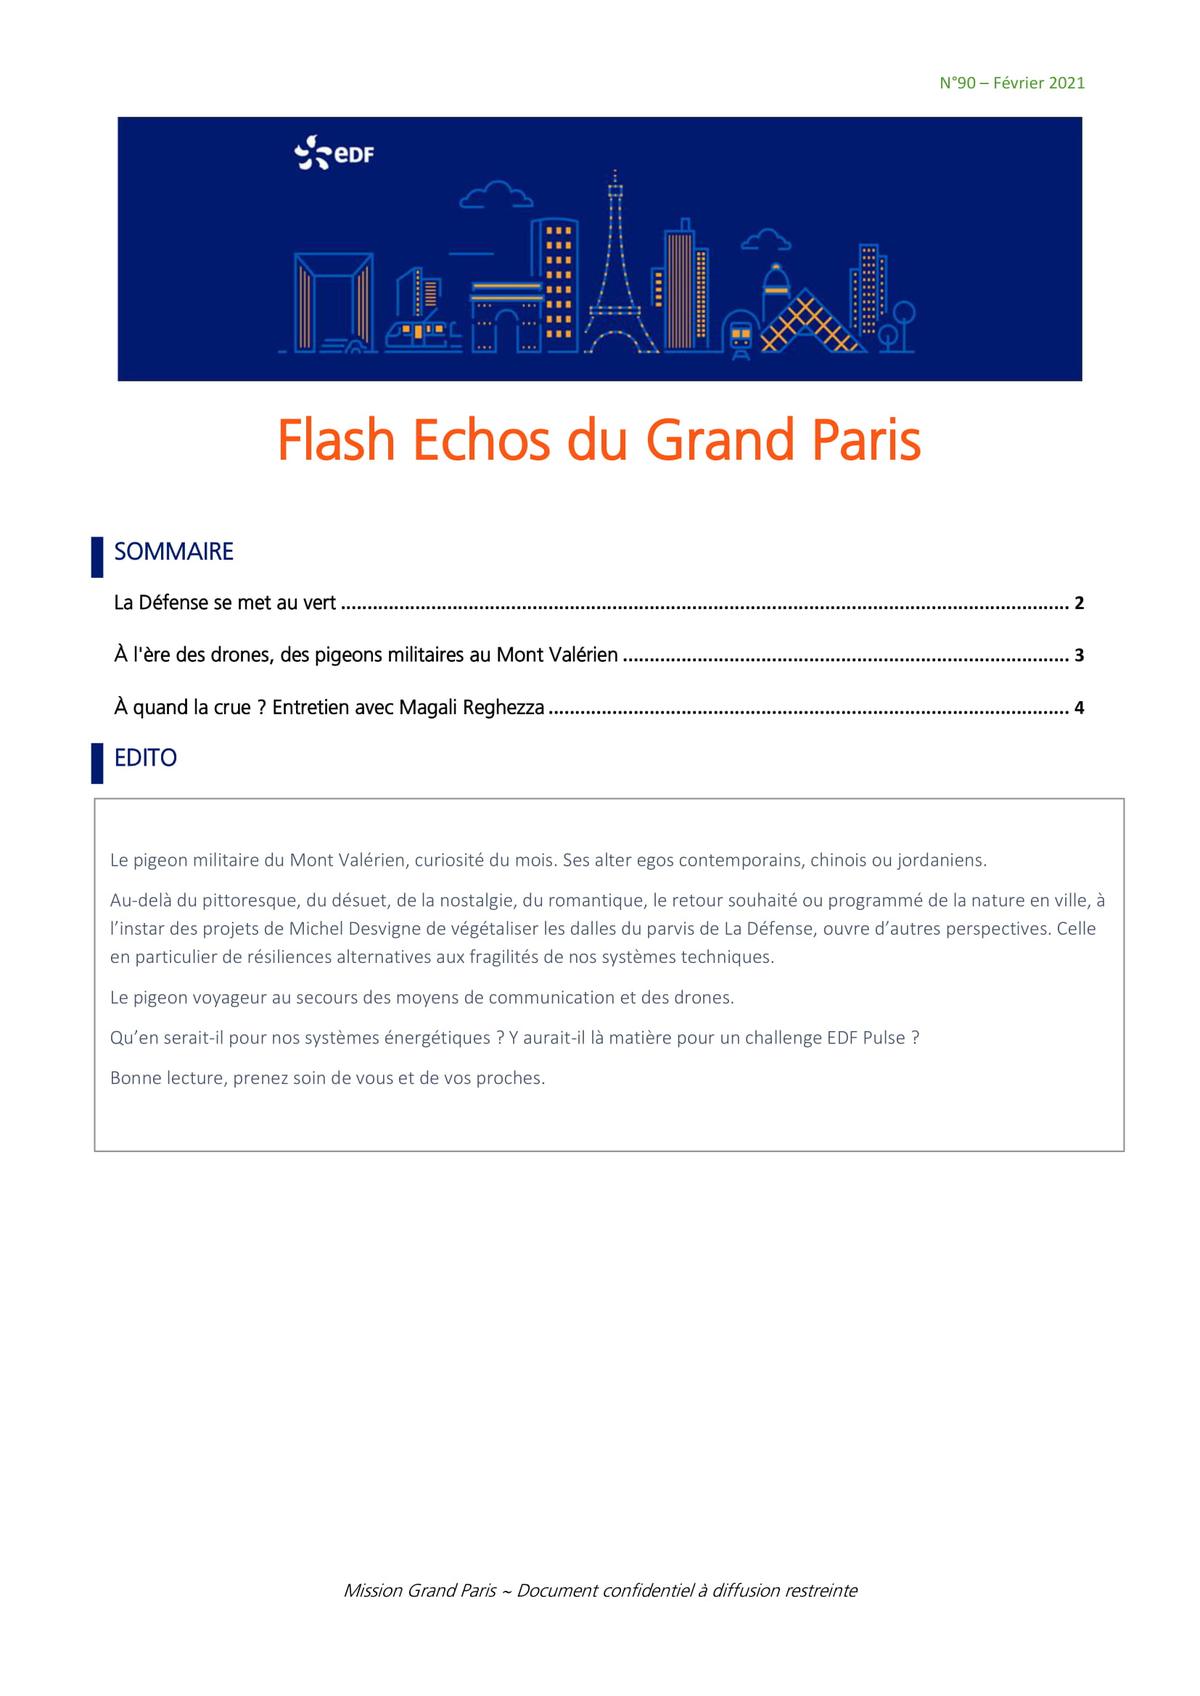 Flash Echos du Grand Paris - Février 2021